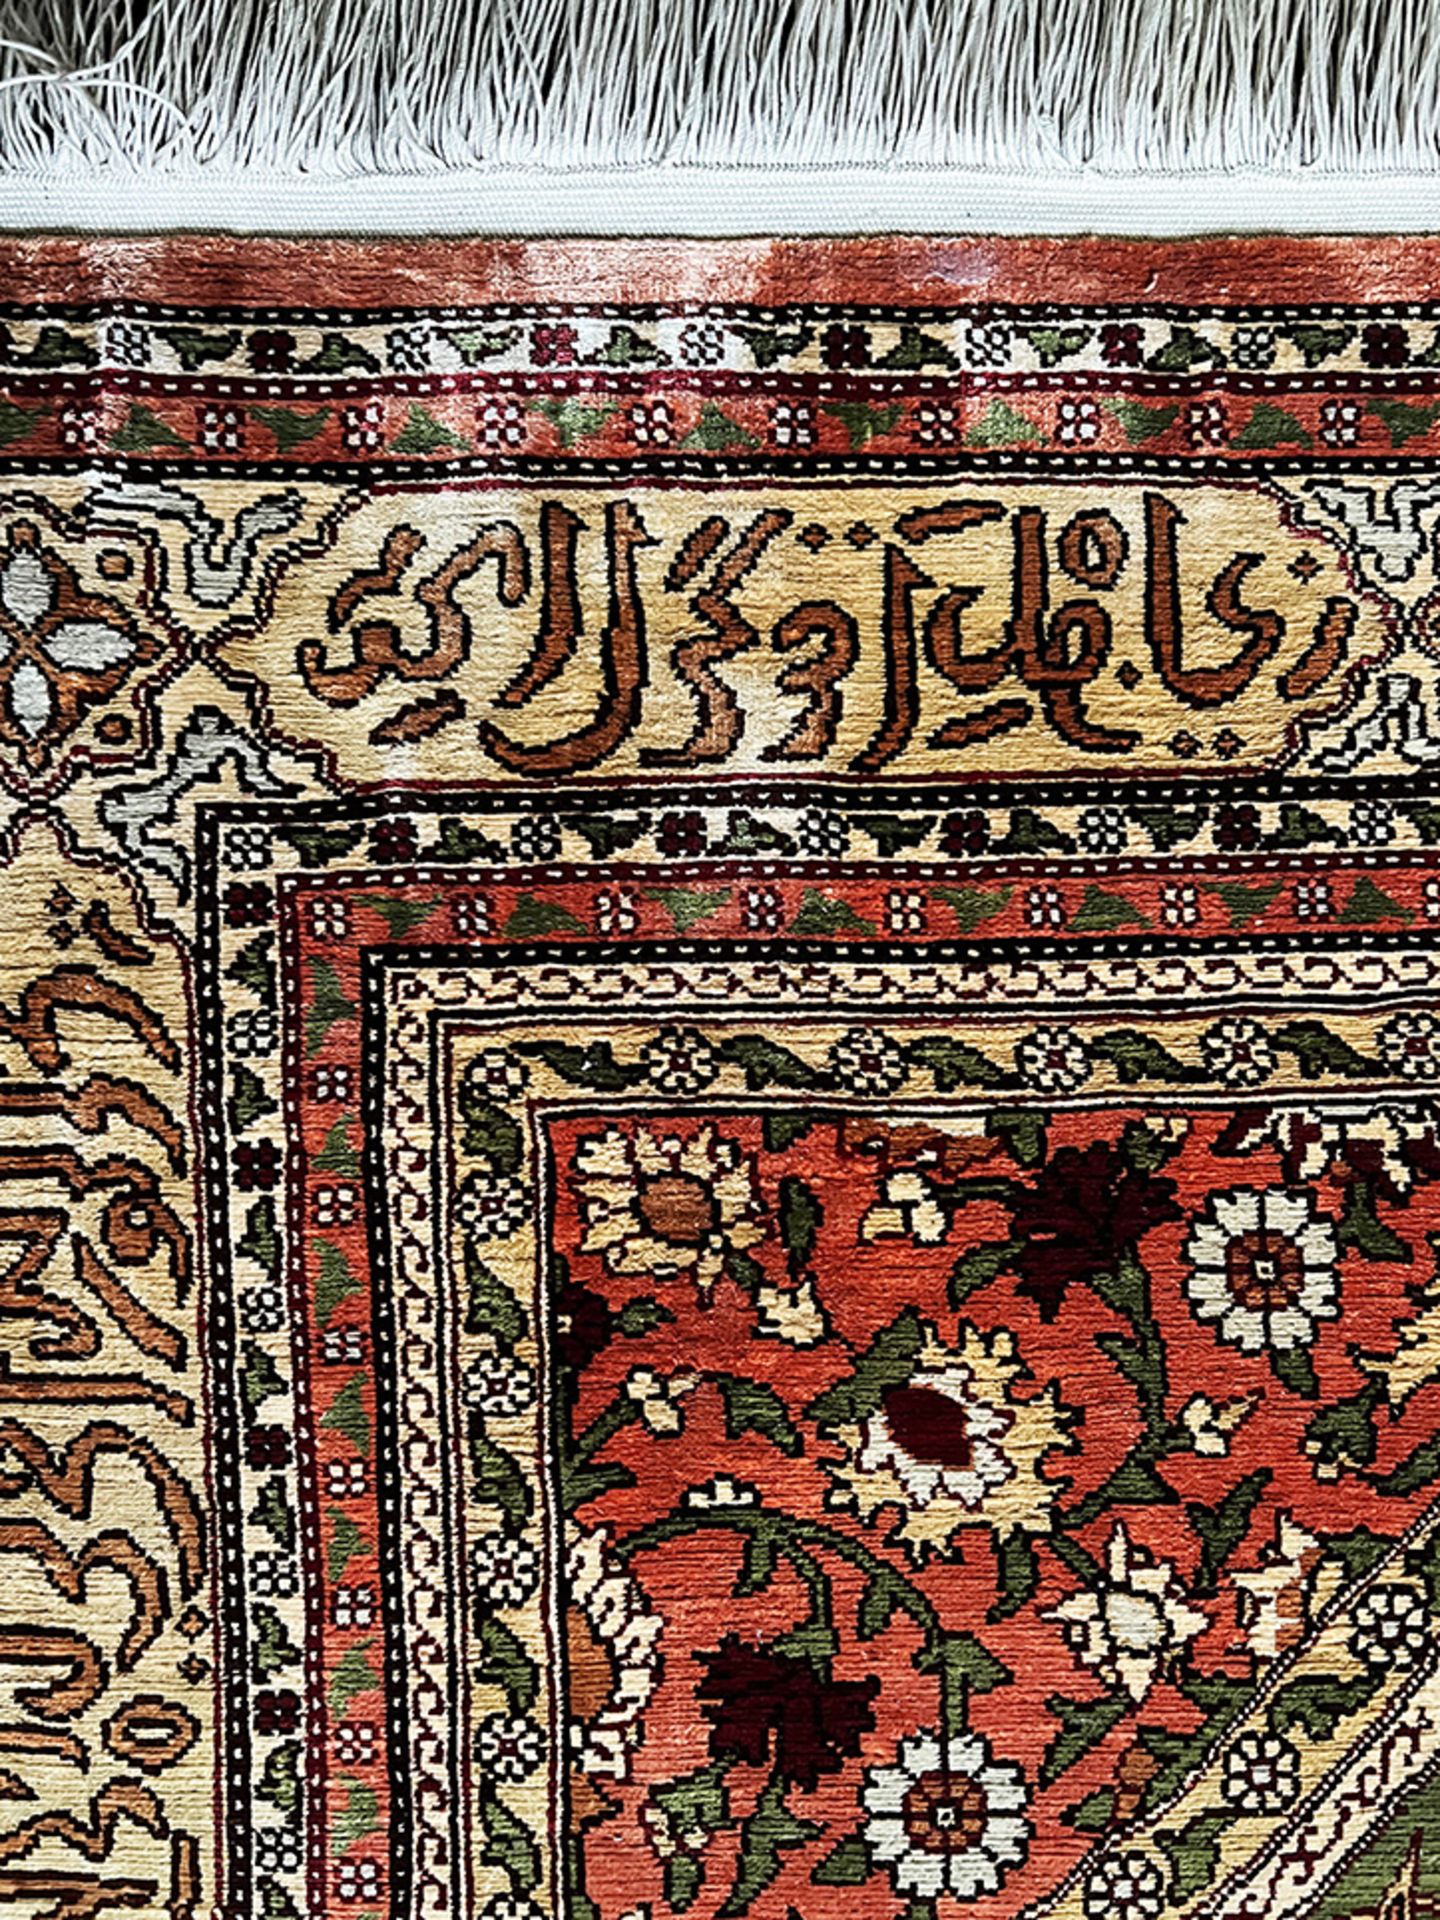 Teppich bzw. Wandteppich, Orient, Seide, mit arabischen Schriftzügen beschriftet, kaum Altersspuren, - Image 3 of 5